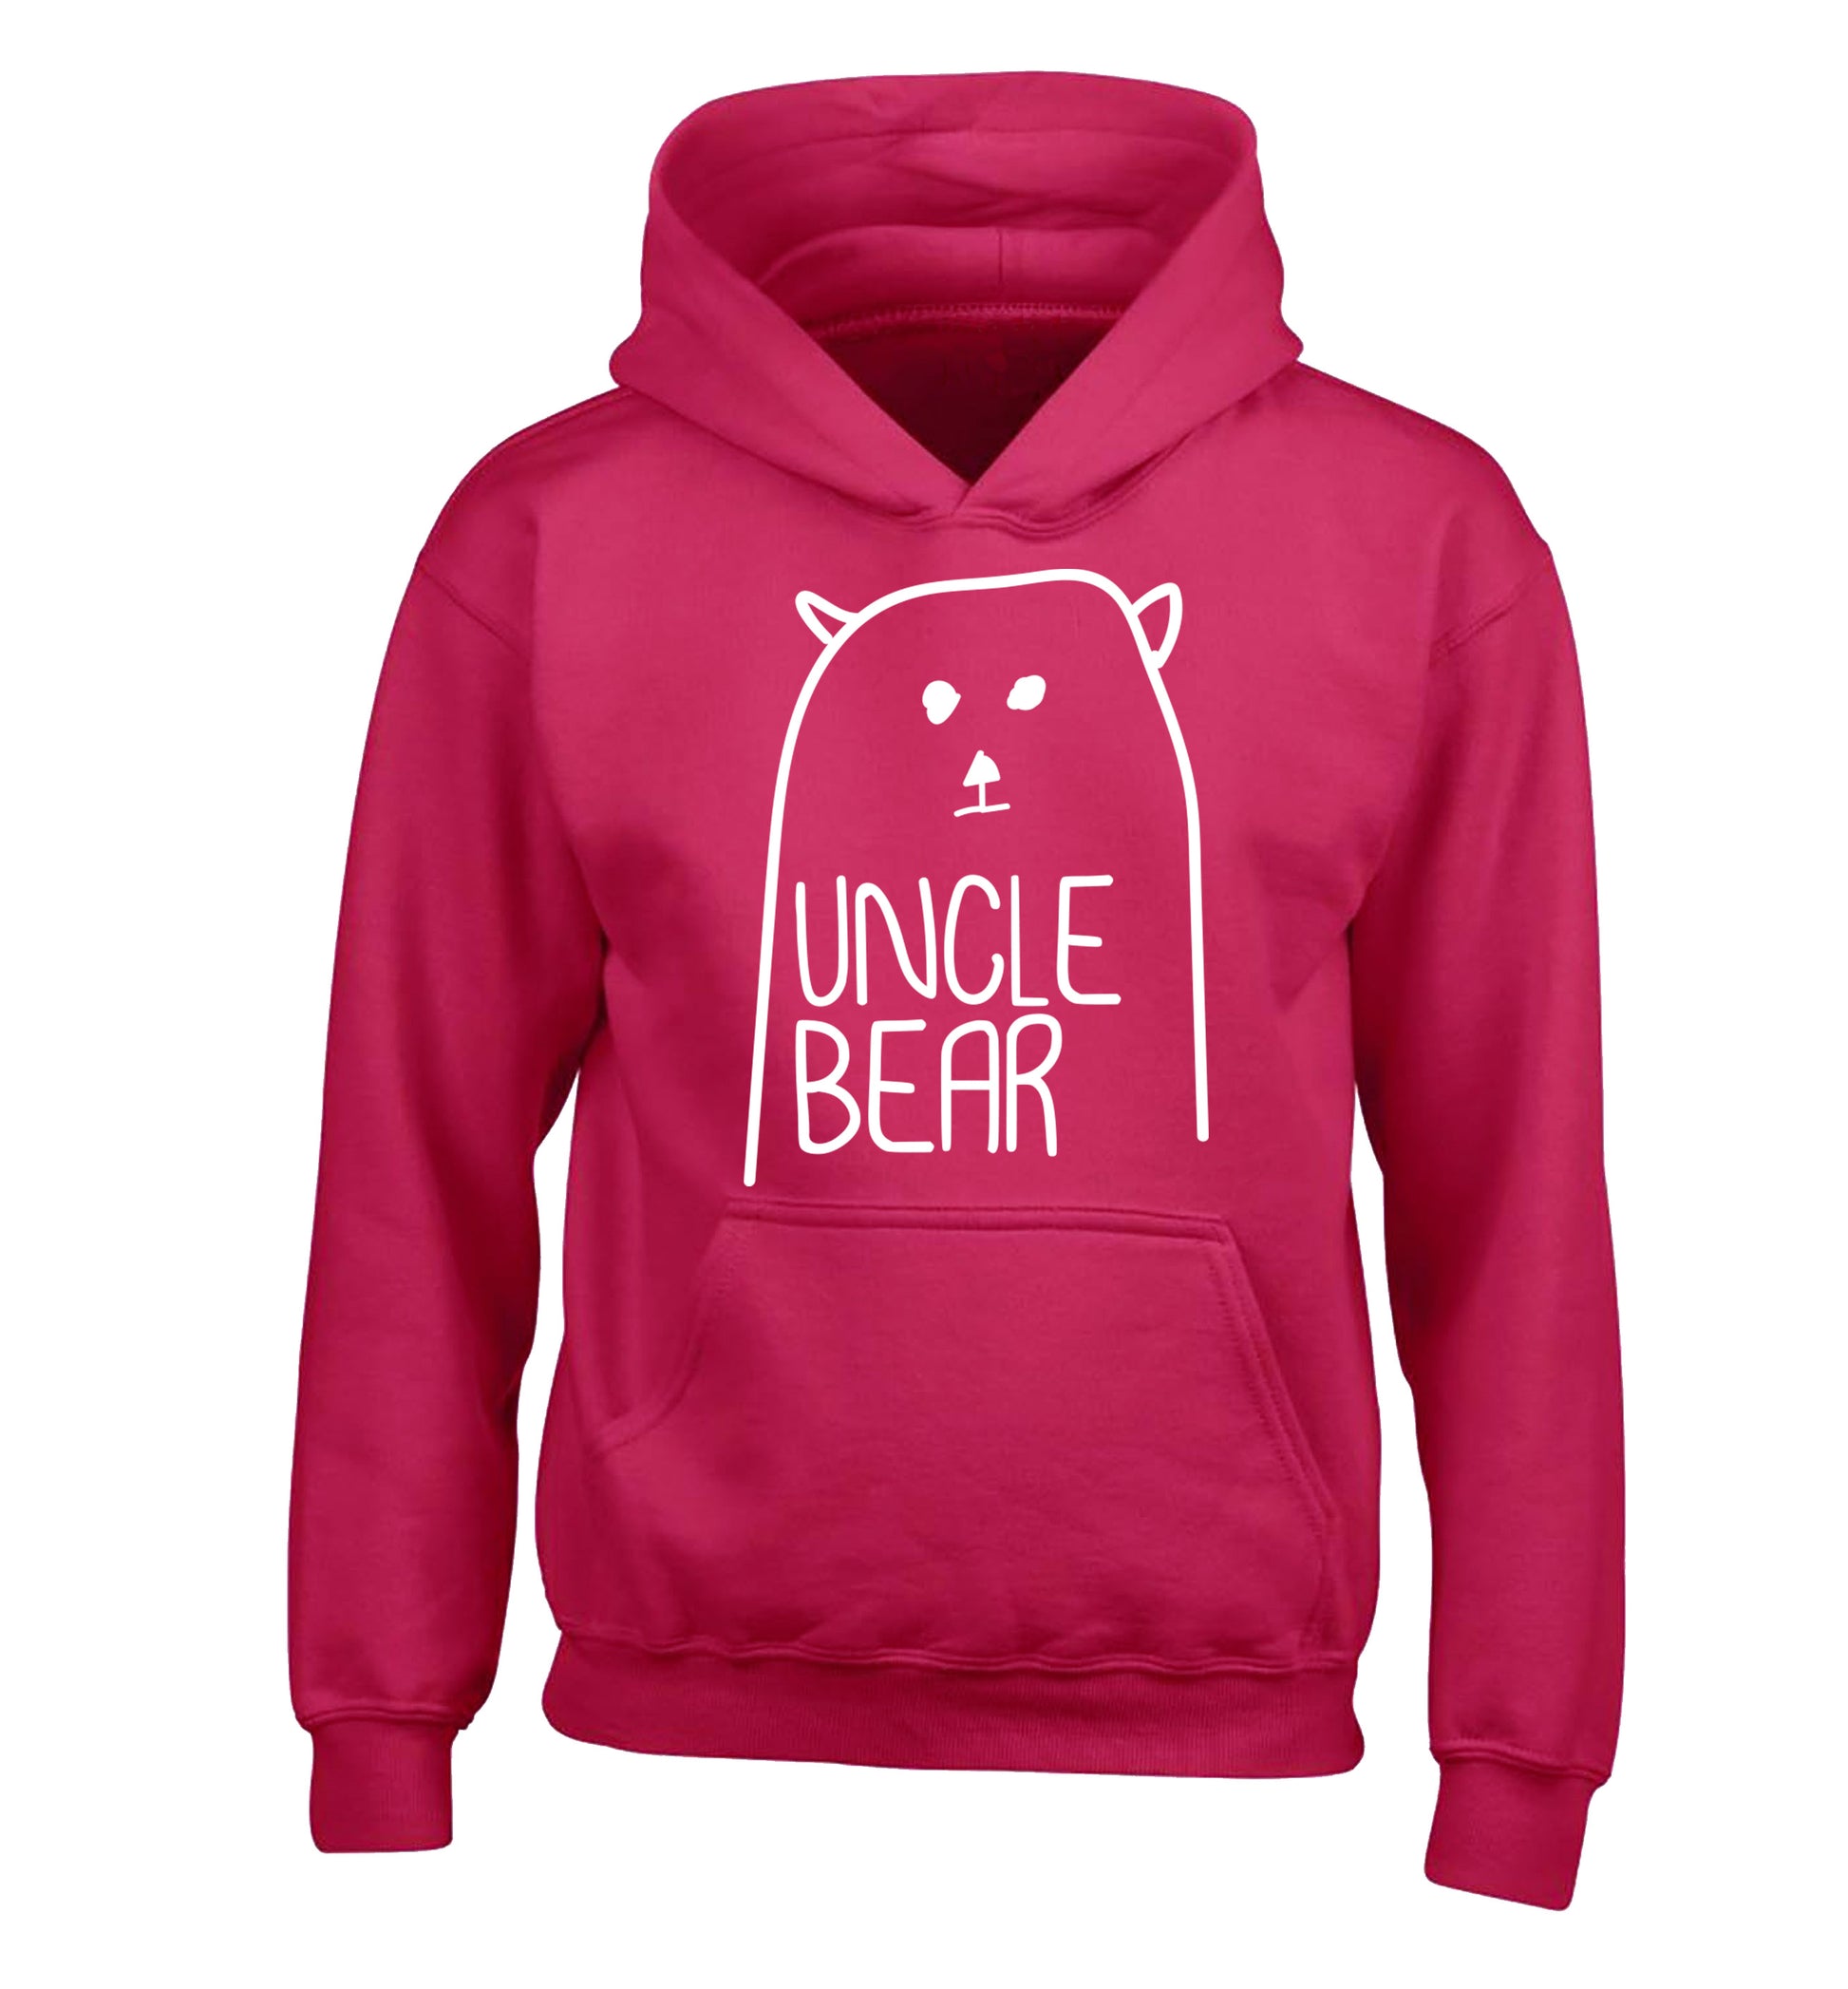 Uncle bear children's pink hoodie 12-13 Years